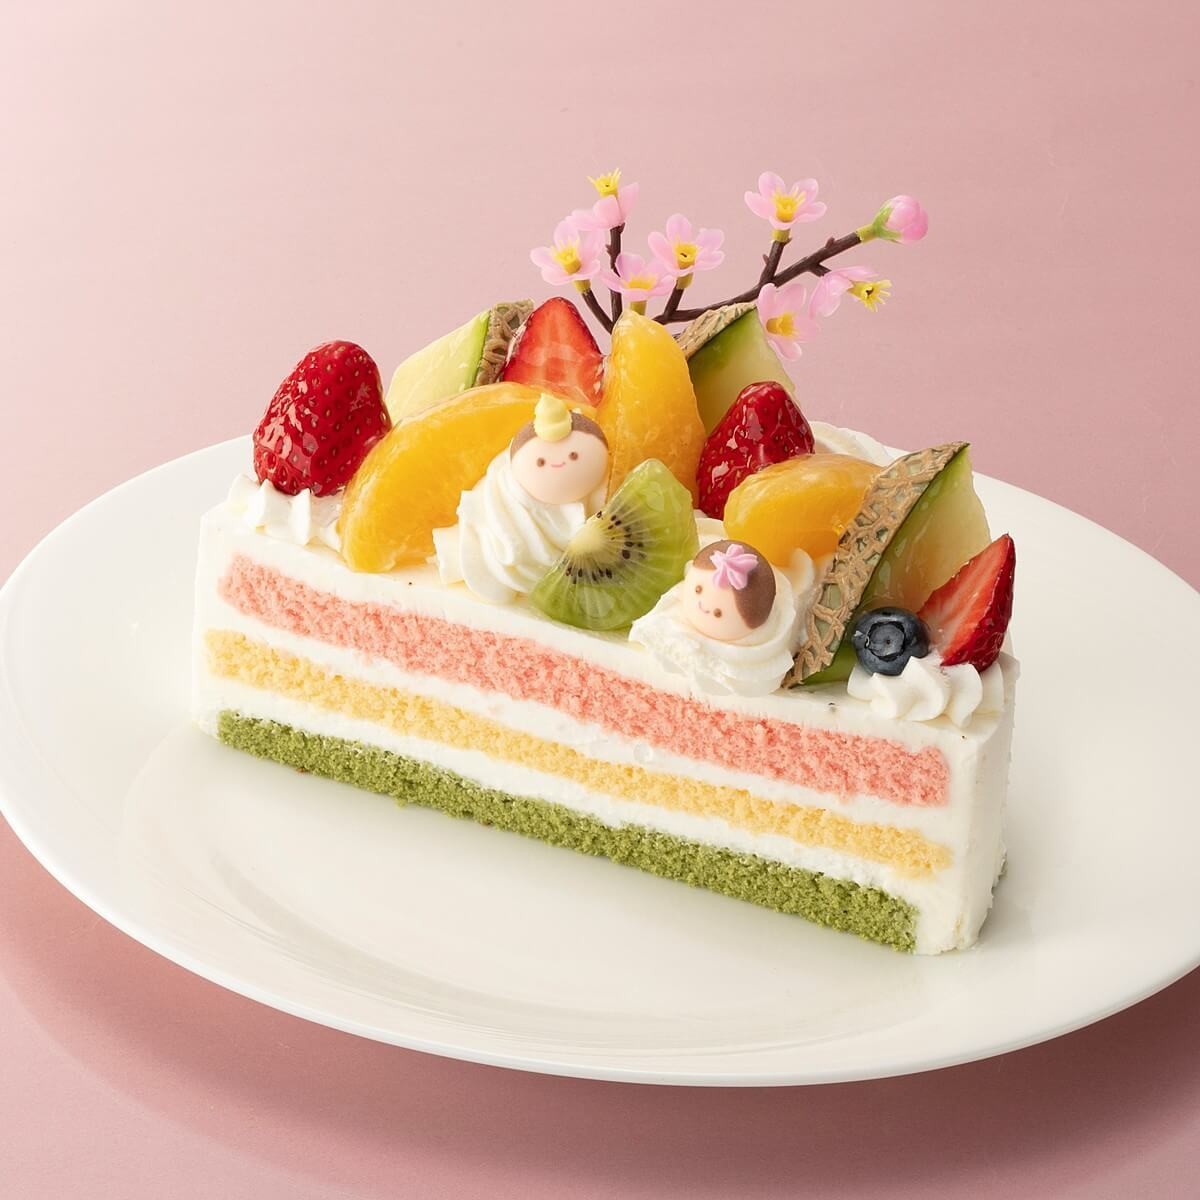 シャトレーゼの 180円ショートケーキ は3月3日までの期間限定 ヨムーノ